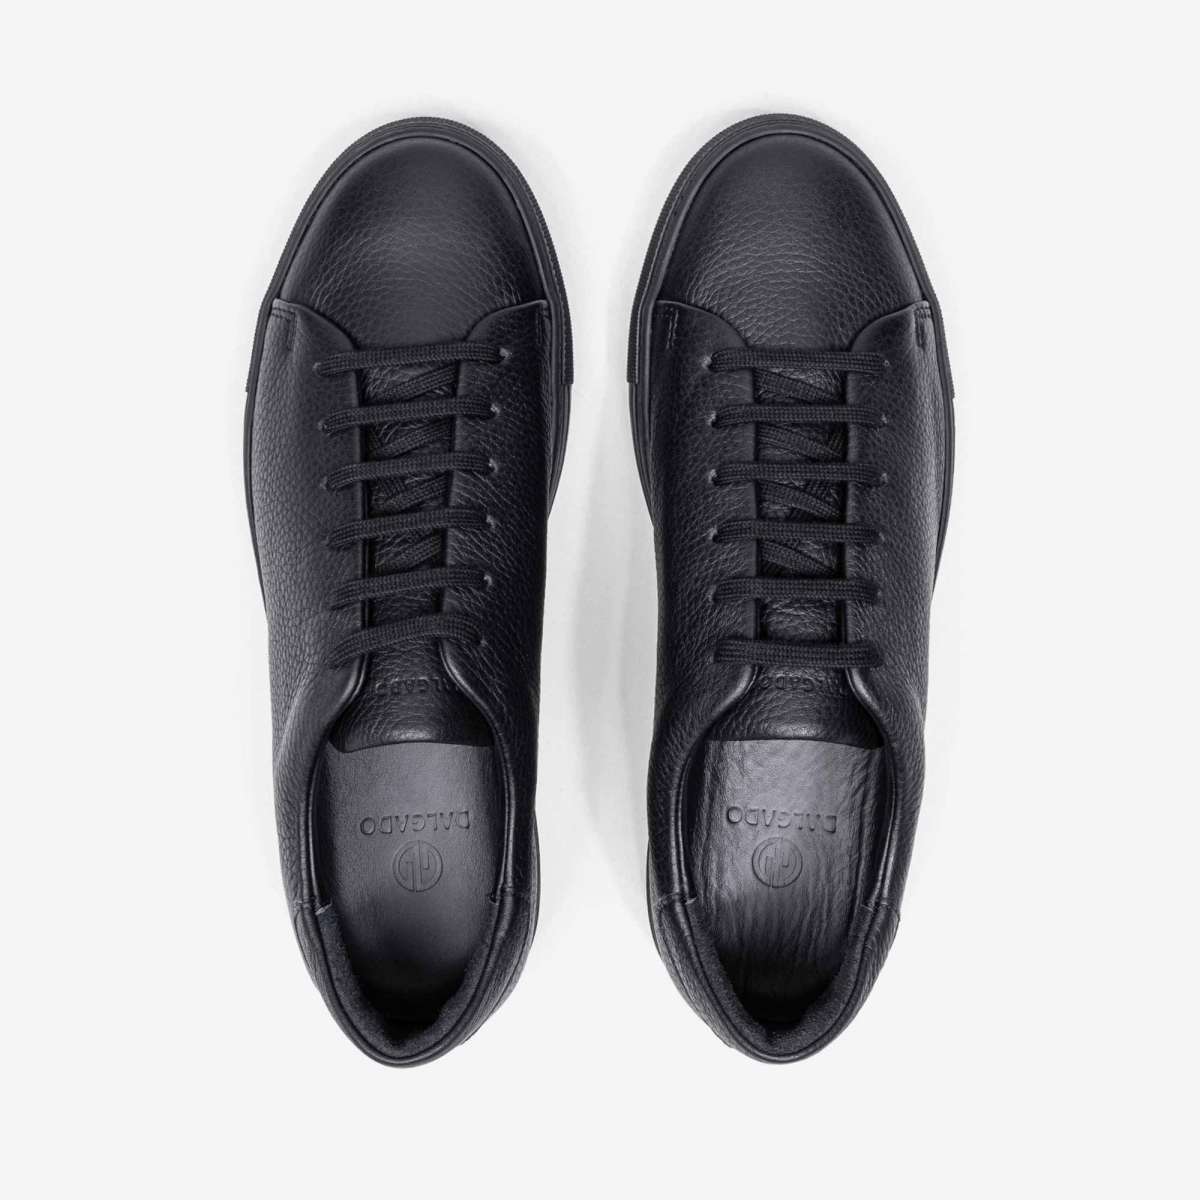 Men's Low-Top Leather Sneakers Black - Laurent | Dalgado